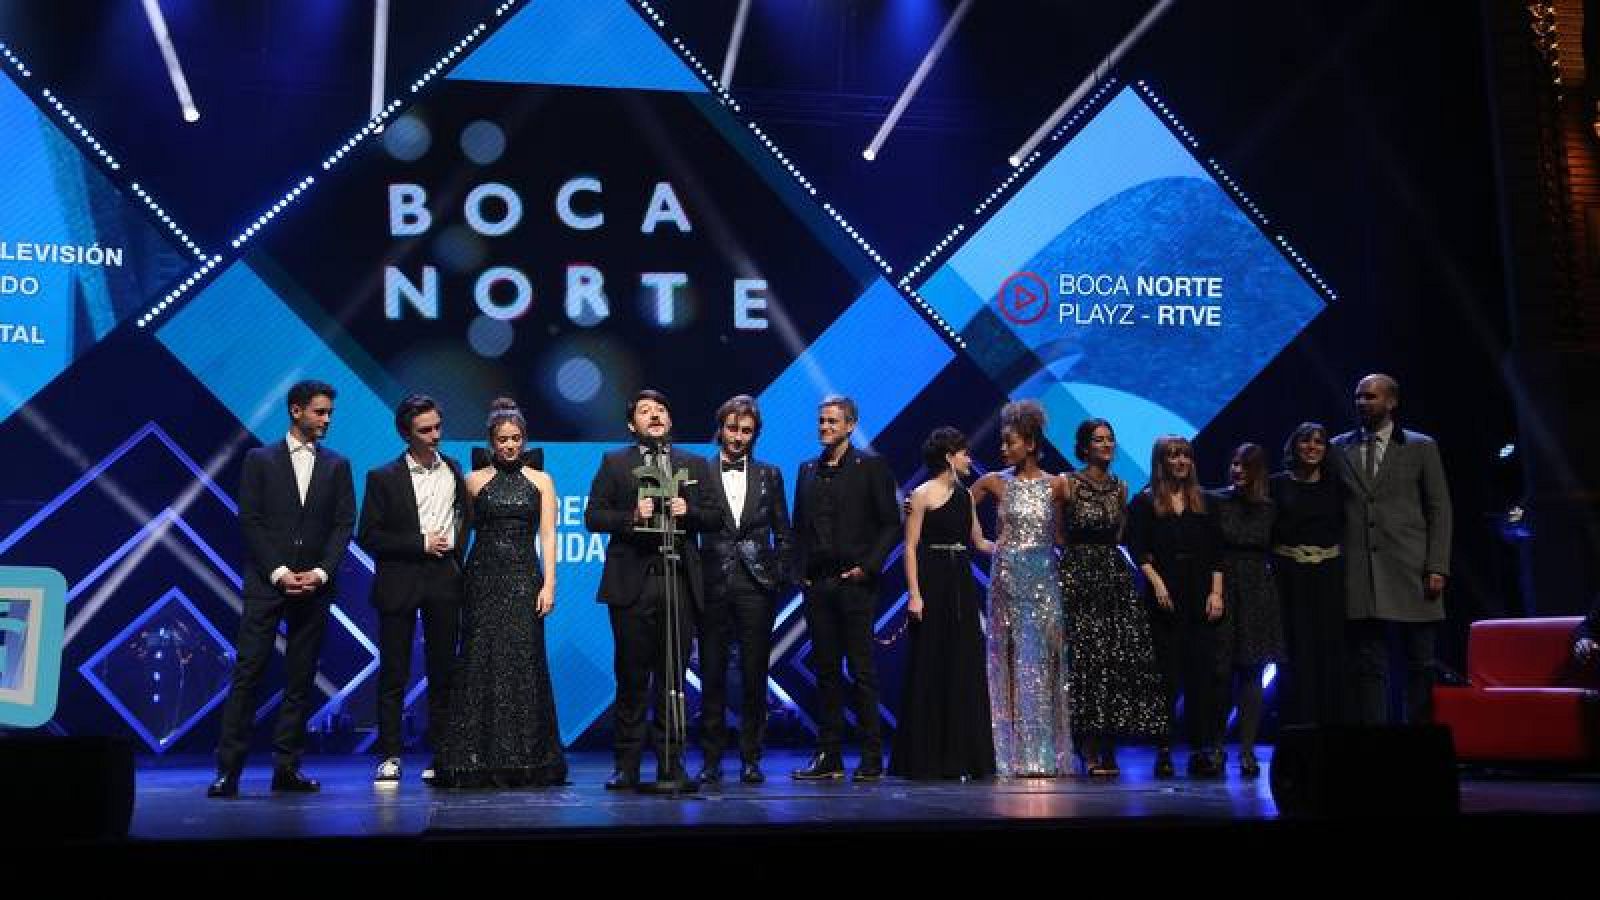 Boca Norte - Playz y el equipo de 'Boca Norte' recogen el Premio Ondas 2019 - PLAYZ.es